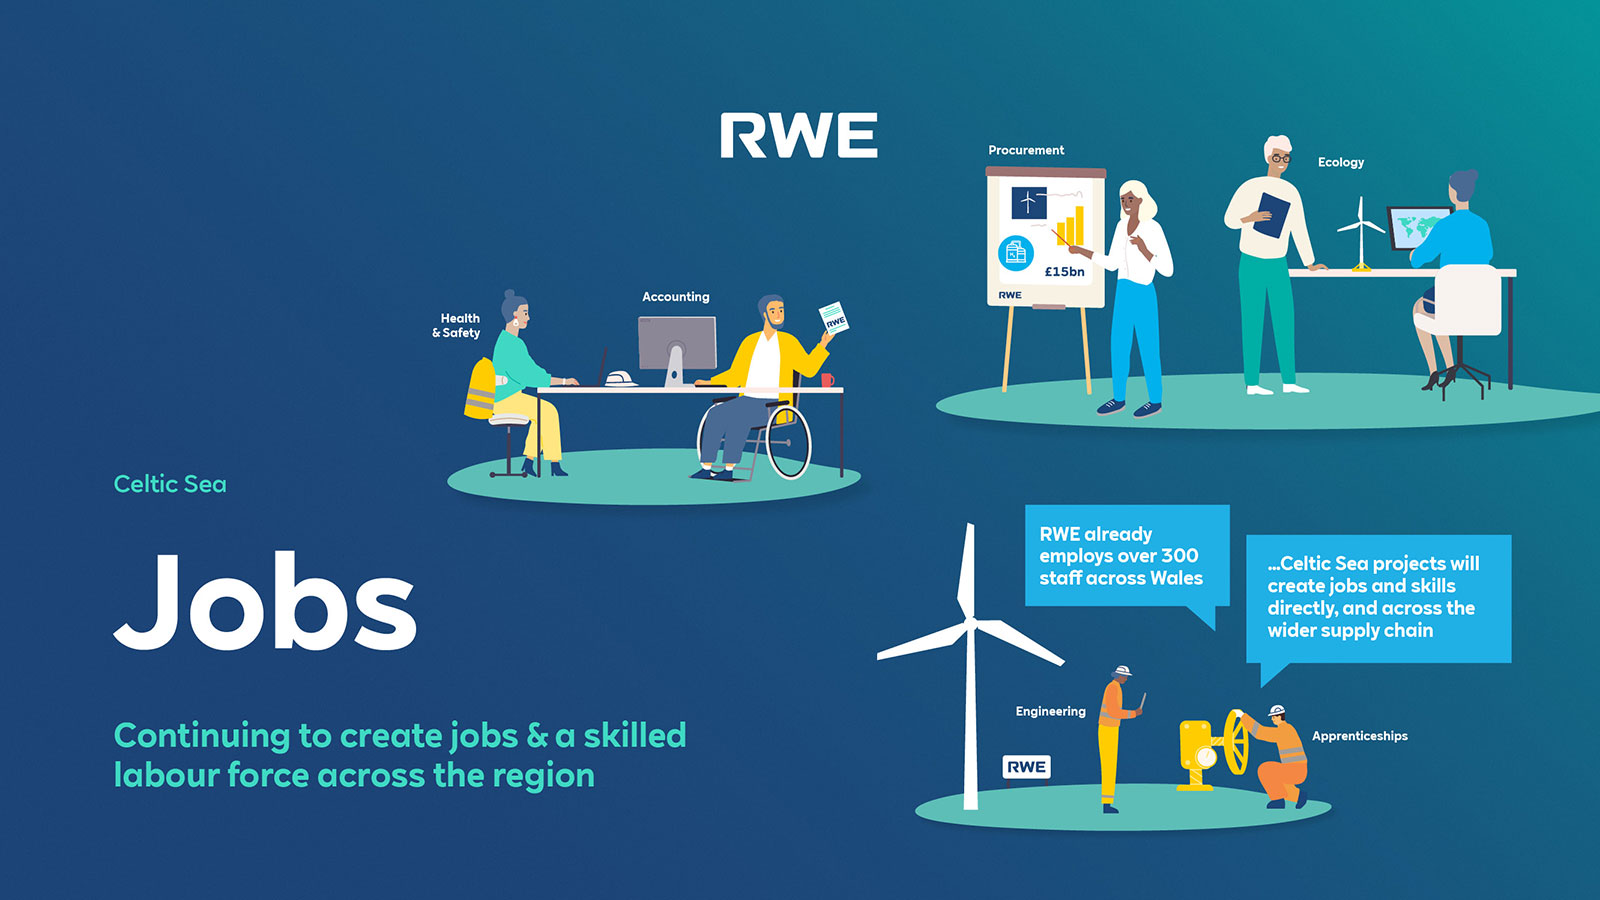 Jobs | RWE in the Celtic Sea